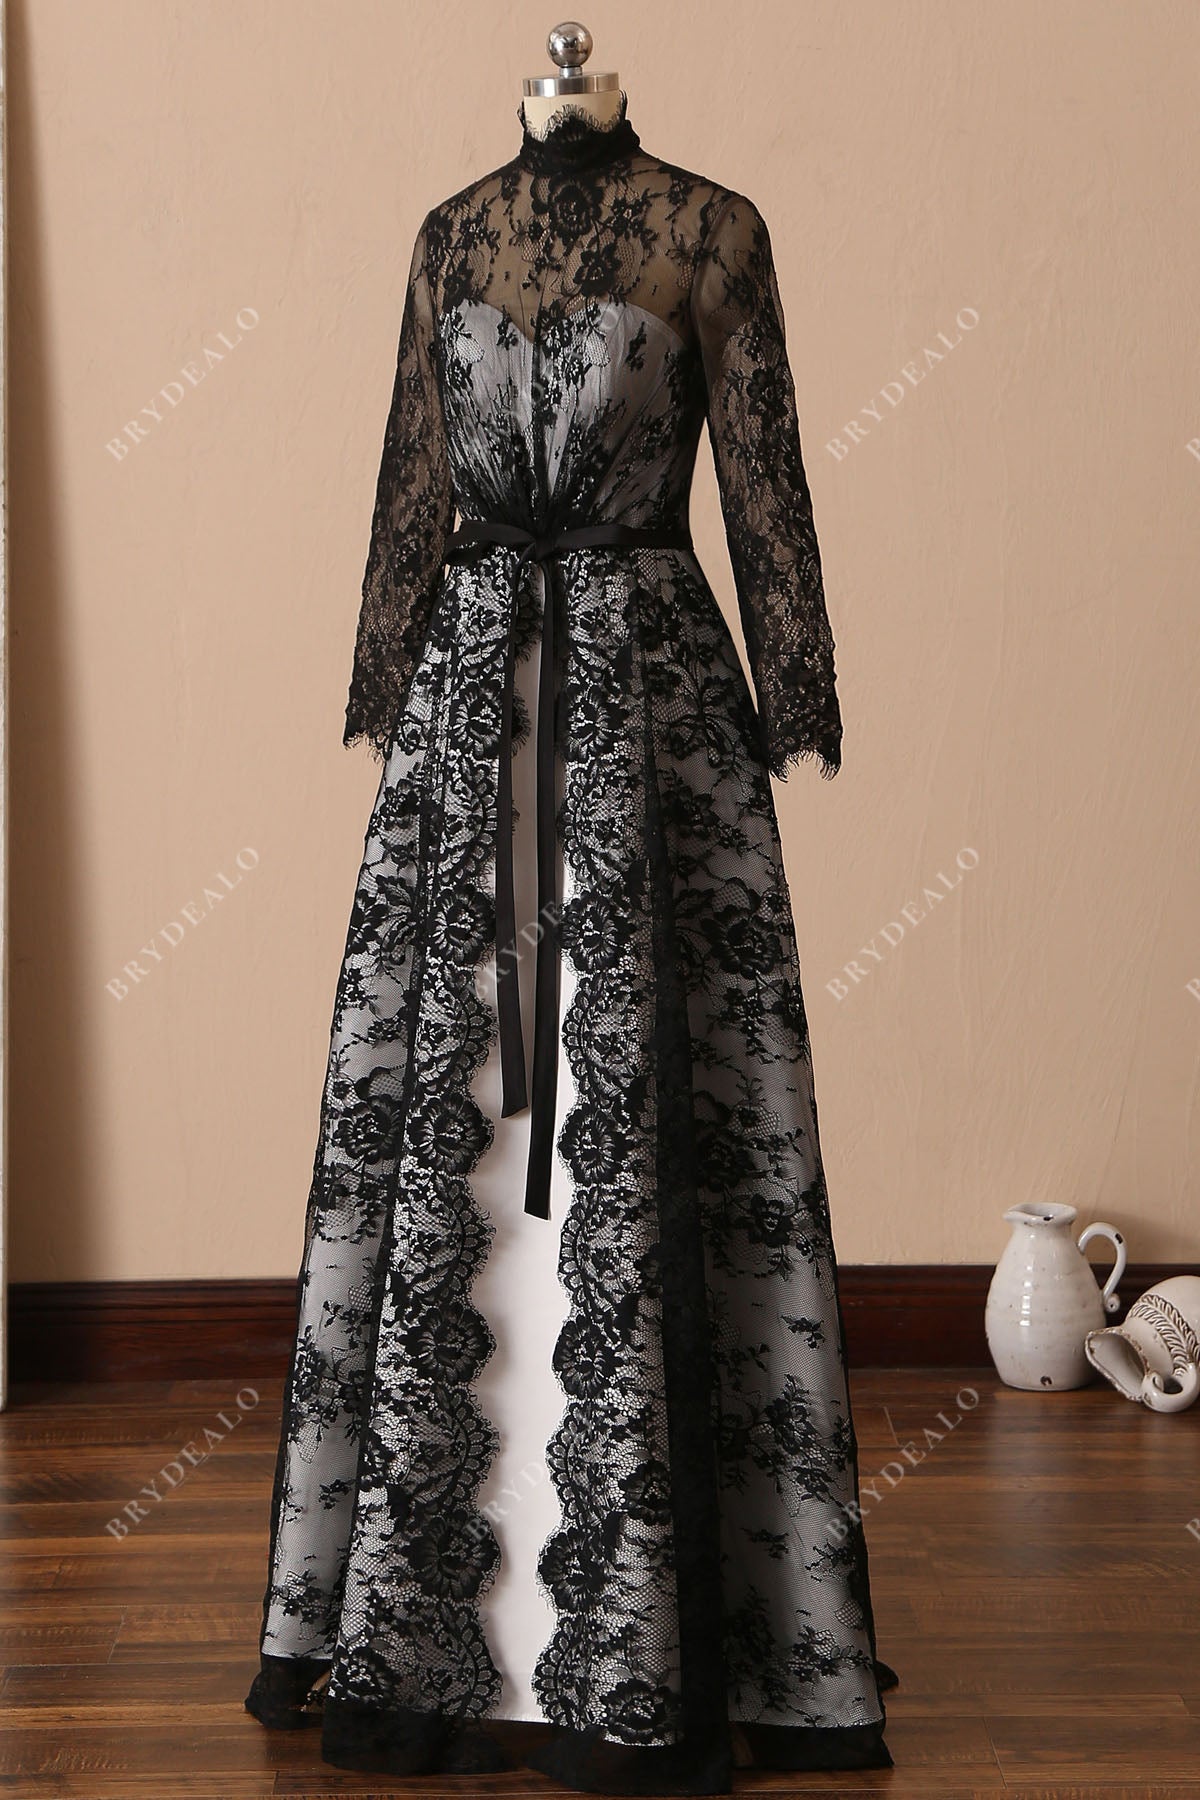 black lace overlaid ivory satin wedding dress